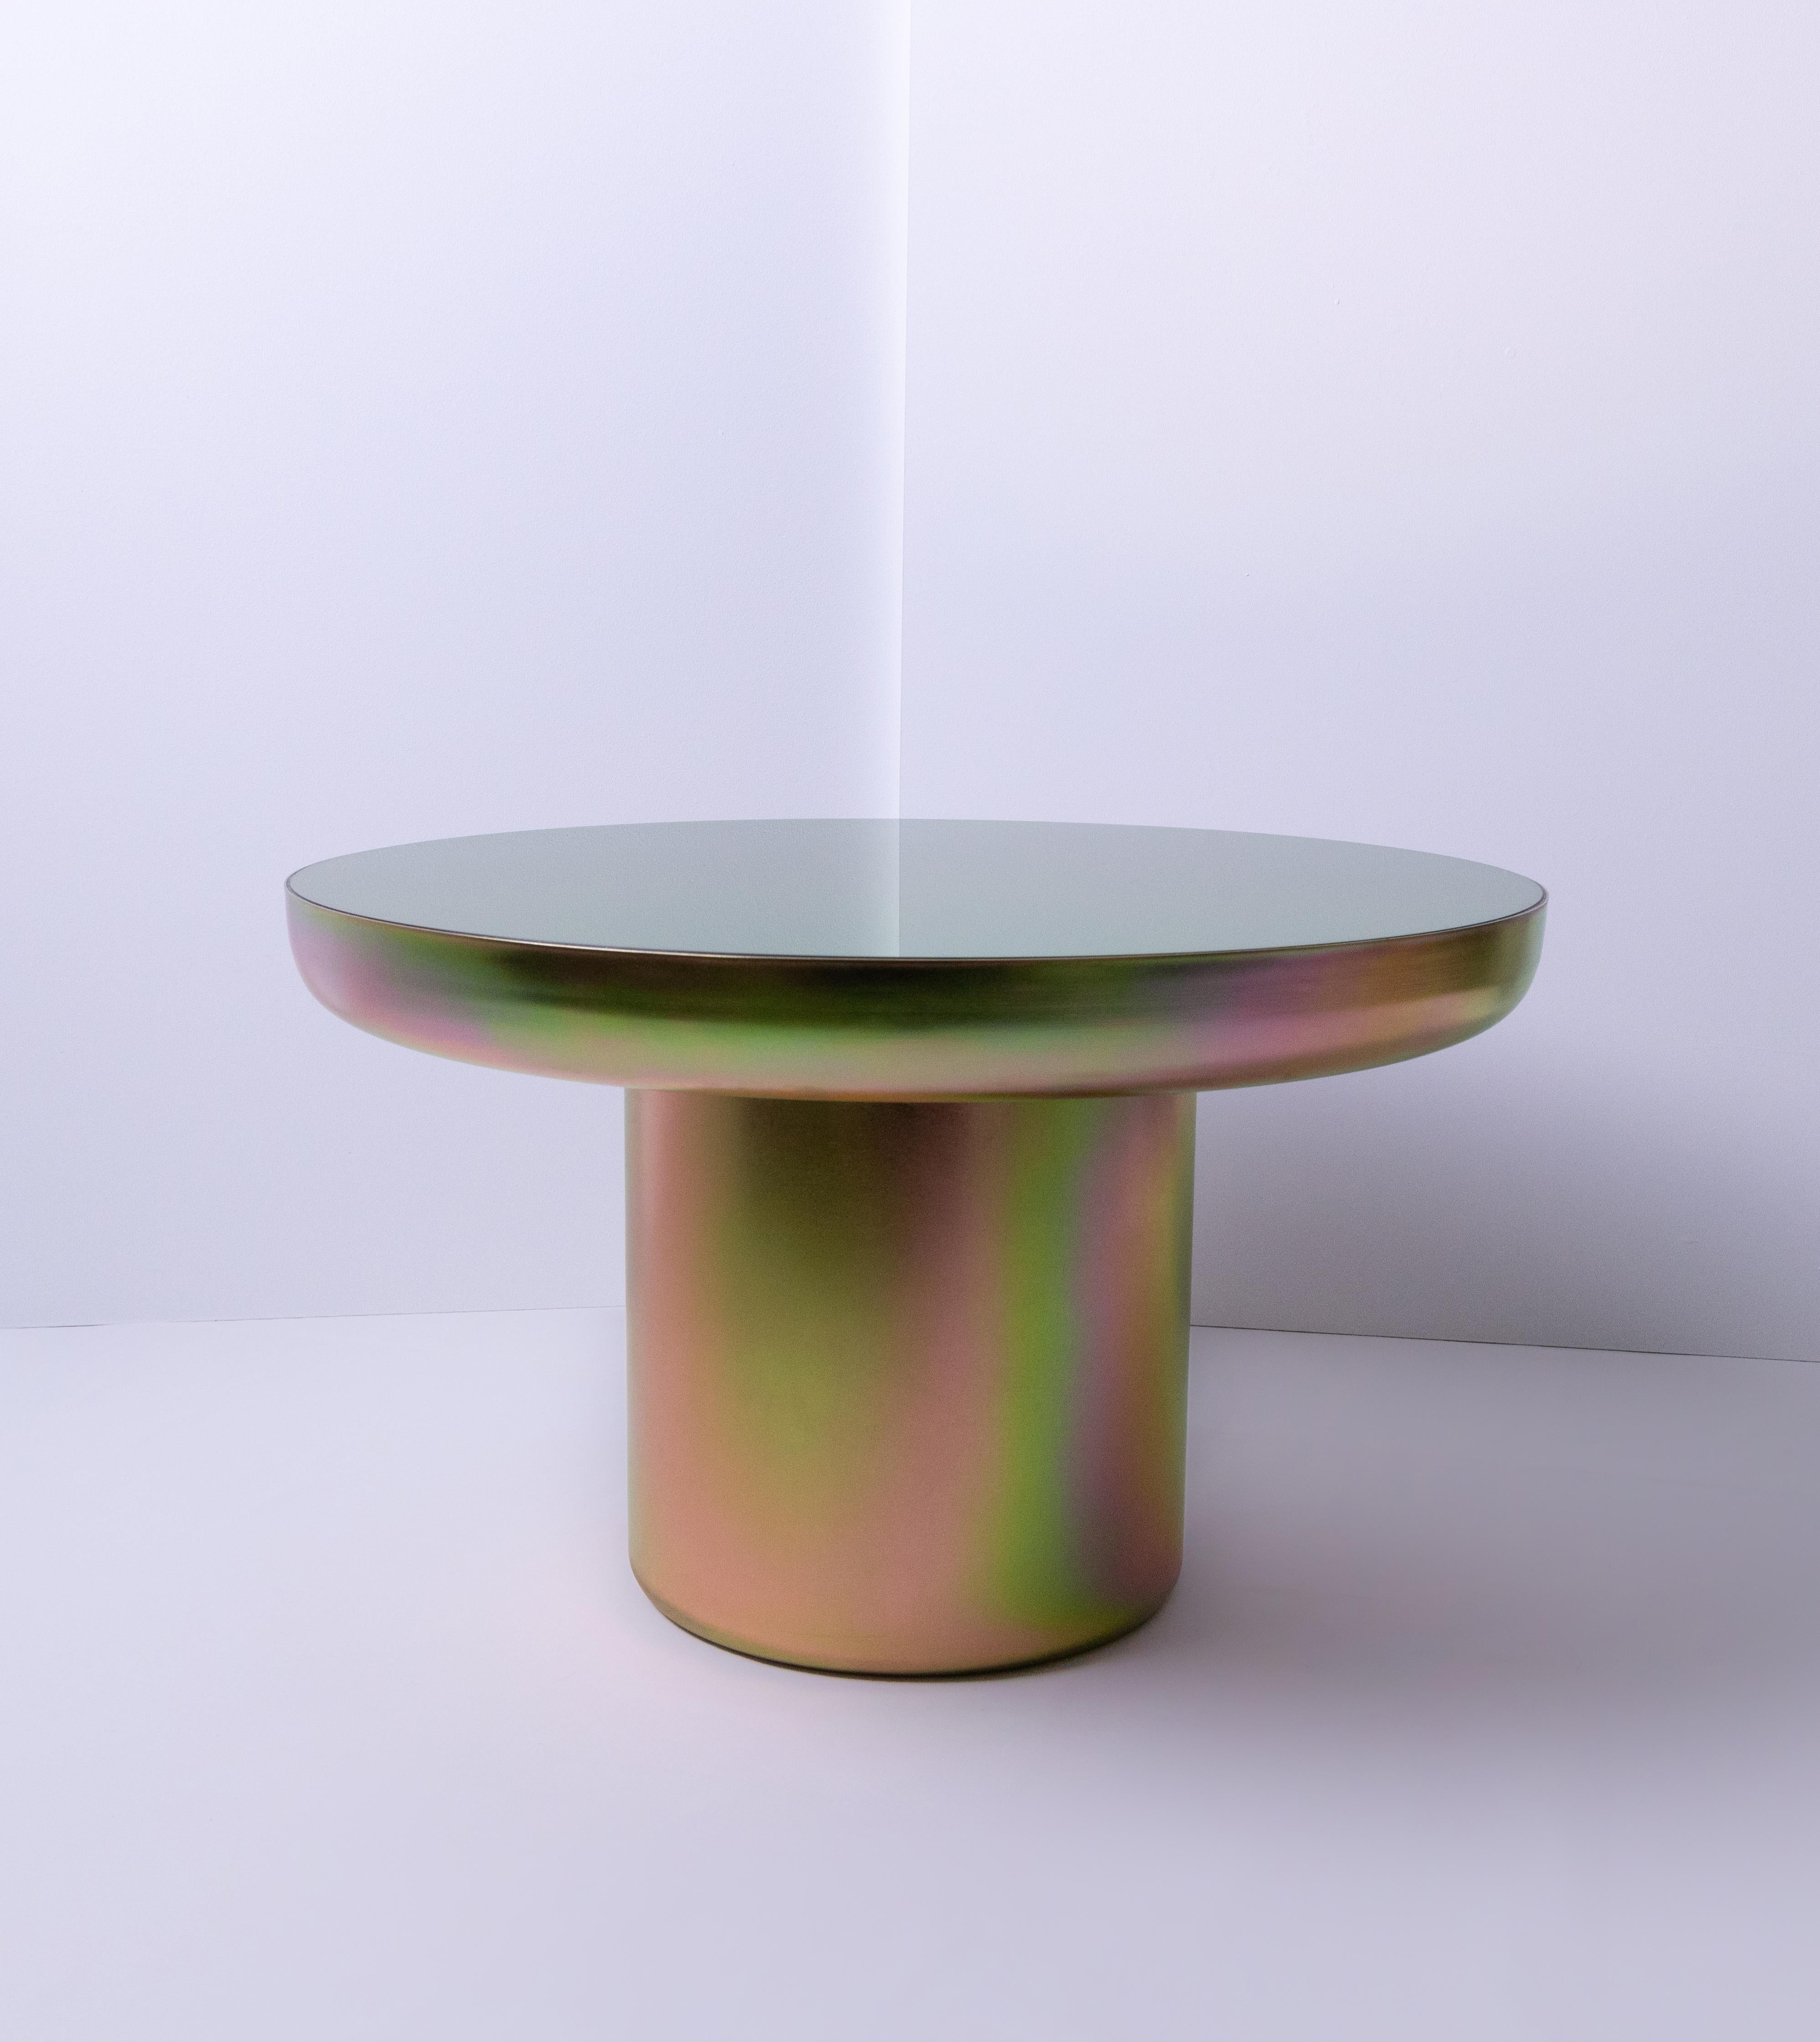 Mood Coffee Zinc ist ein visuell leichter, skulptural starker Tisch mit einer Beschichtung, die die Form hervorhebt und die Farbe feiert. Der Sockel ist mit einer Zinkbeschichtung versehen, die es dem Objekt ermöglicht, die Farben und Töne seiner